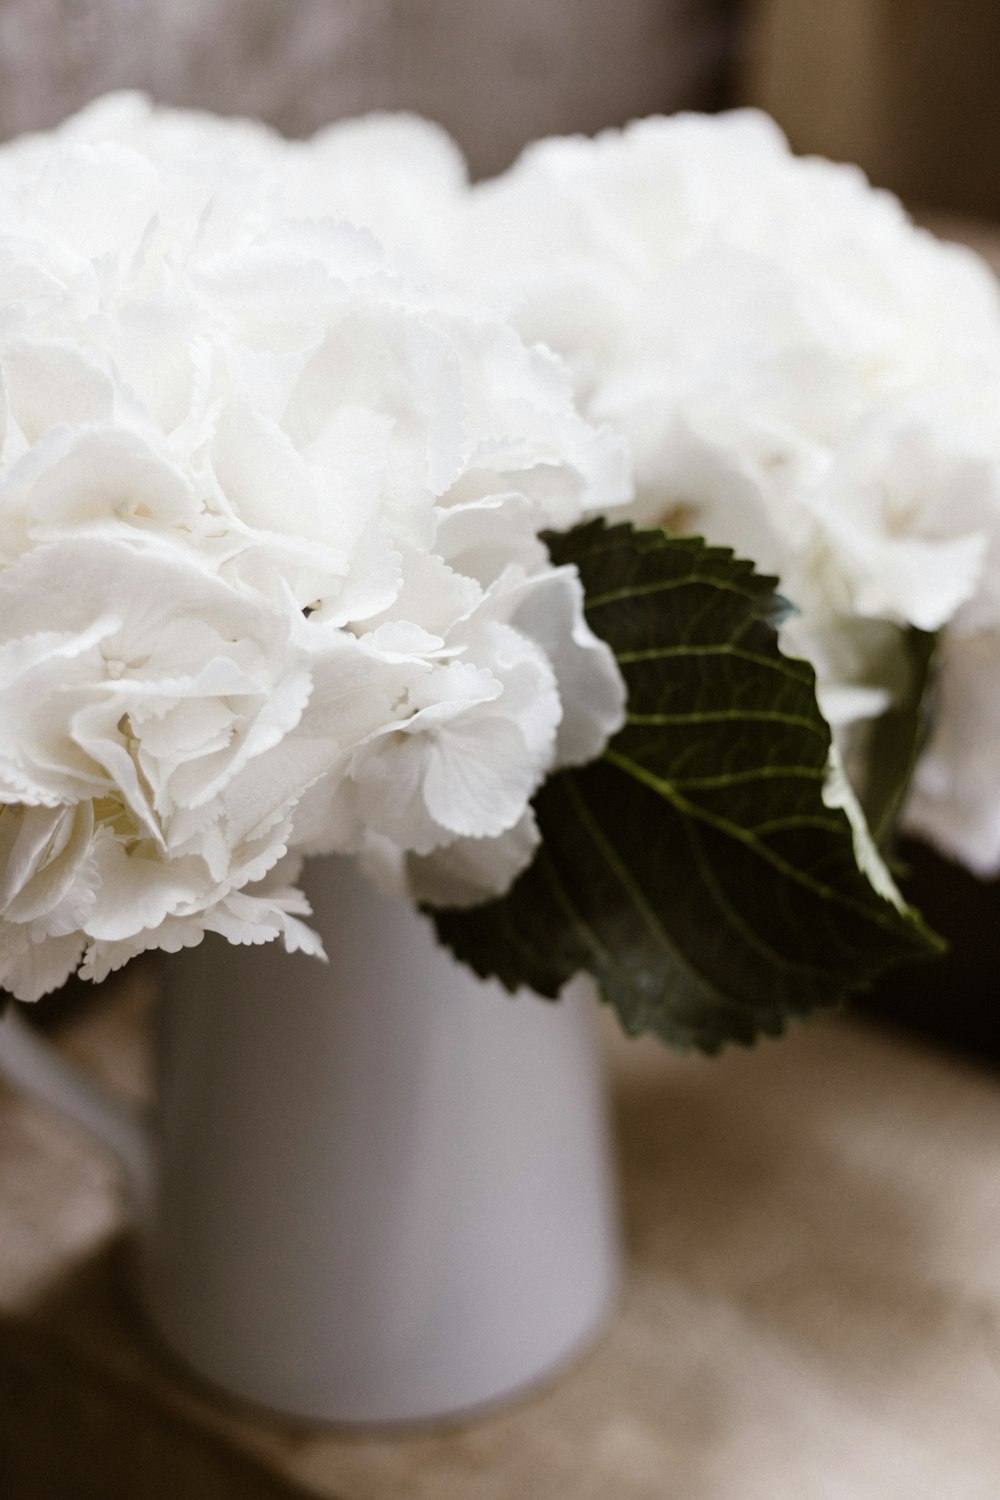 白いアジサイの花